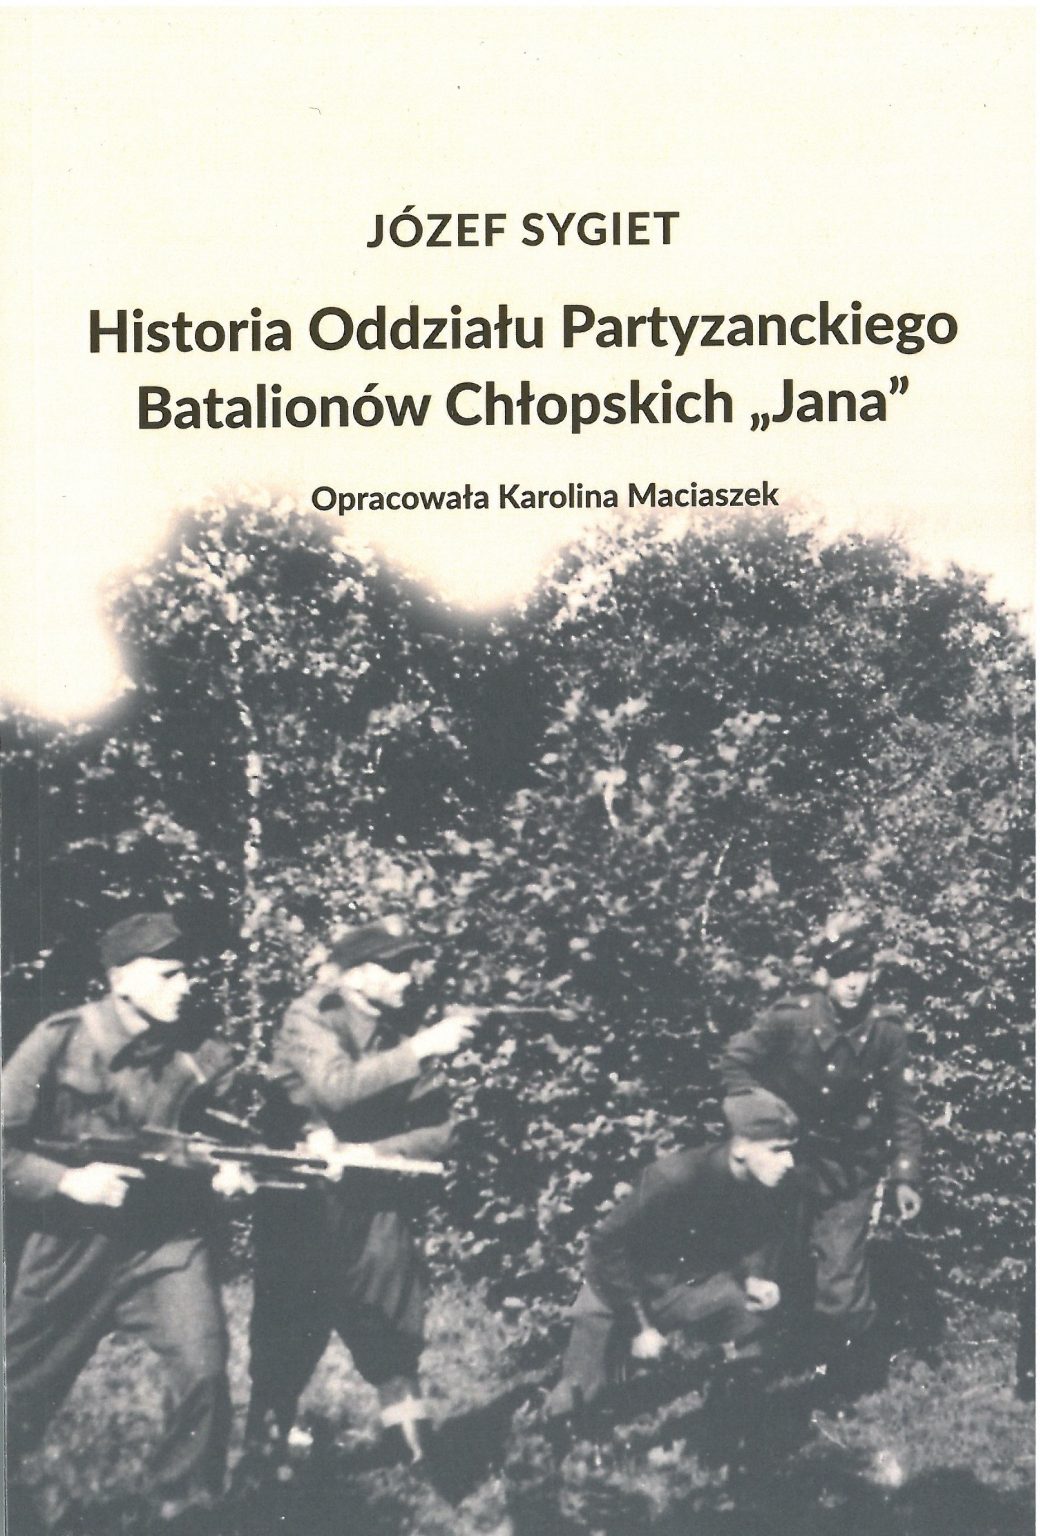 Historia Oddziału Partyzanckiego BCH "Jana" (J.Sygiet)